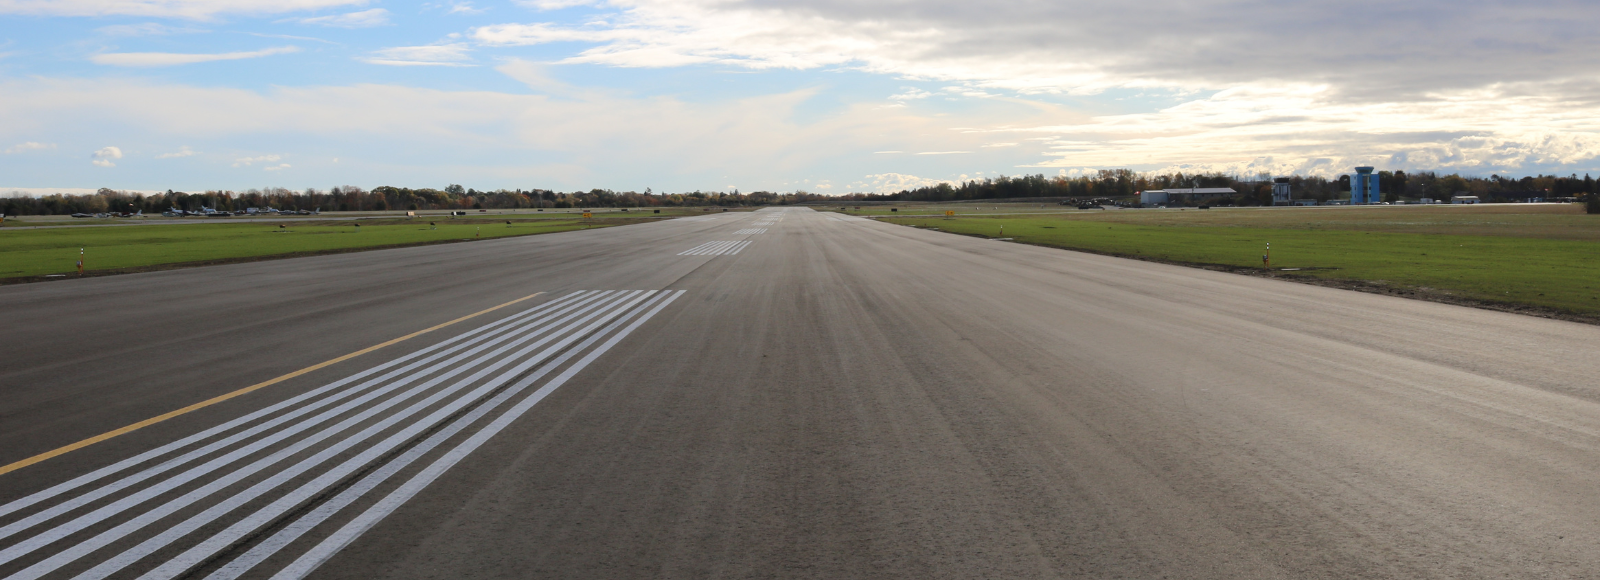 The runway at the Oshawa Executive Airport